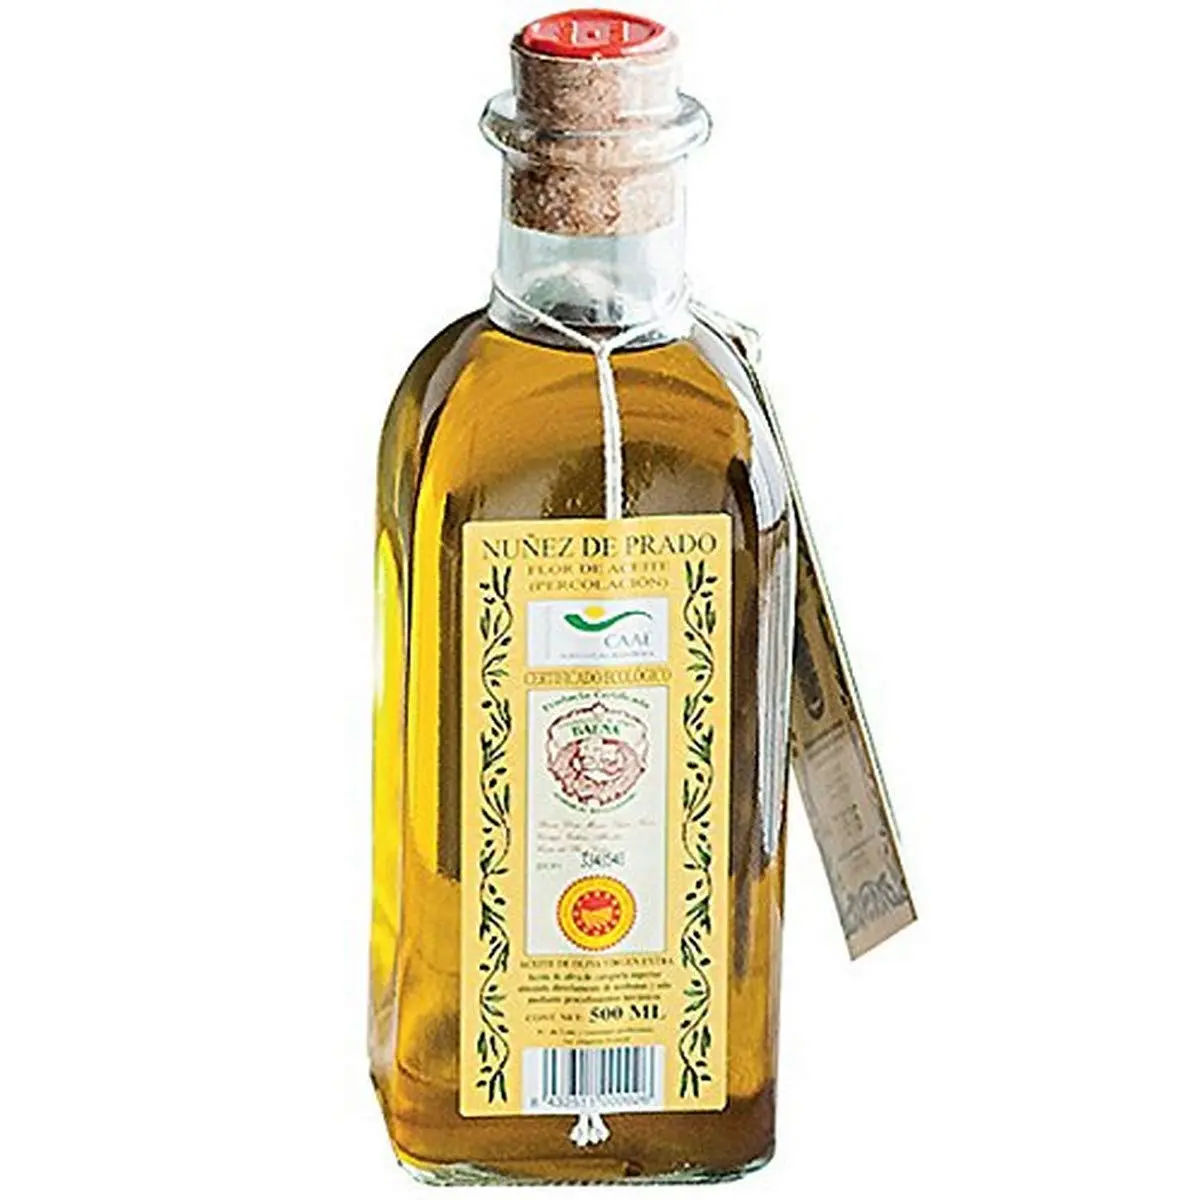 Elige el mejor aceite para toyota prado: mobil 1, esp 5w-30